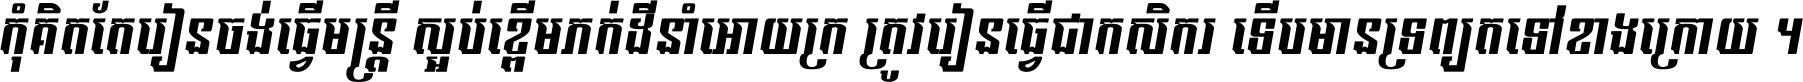 Kh Baphnom 017 EmEng Italic Italic